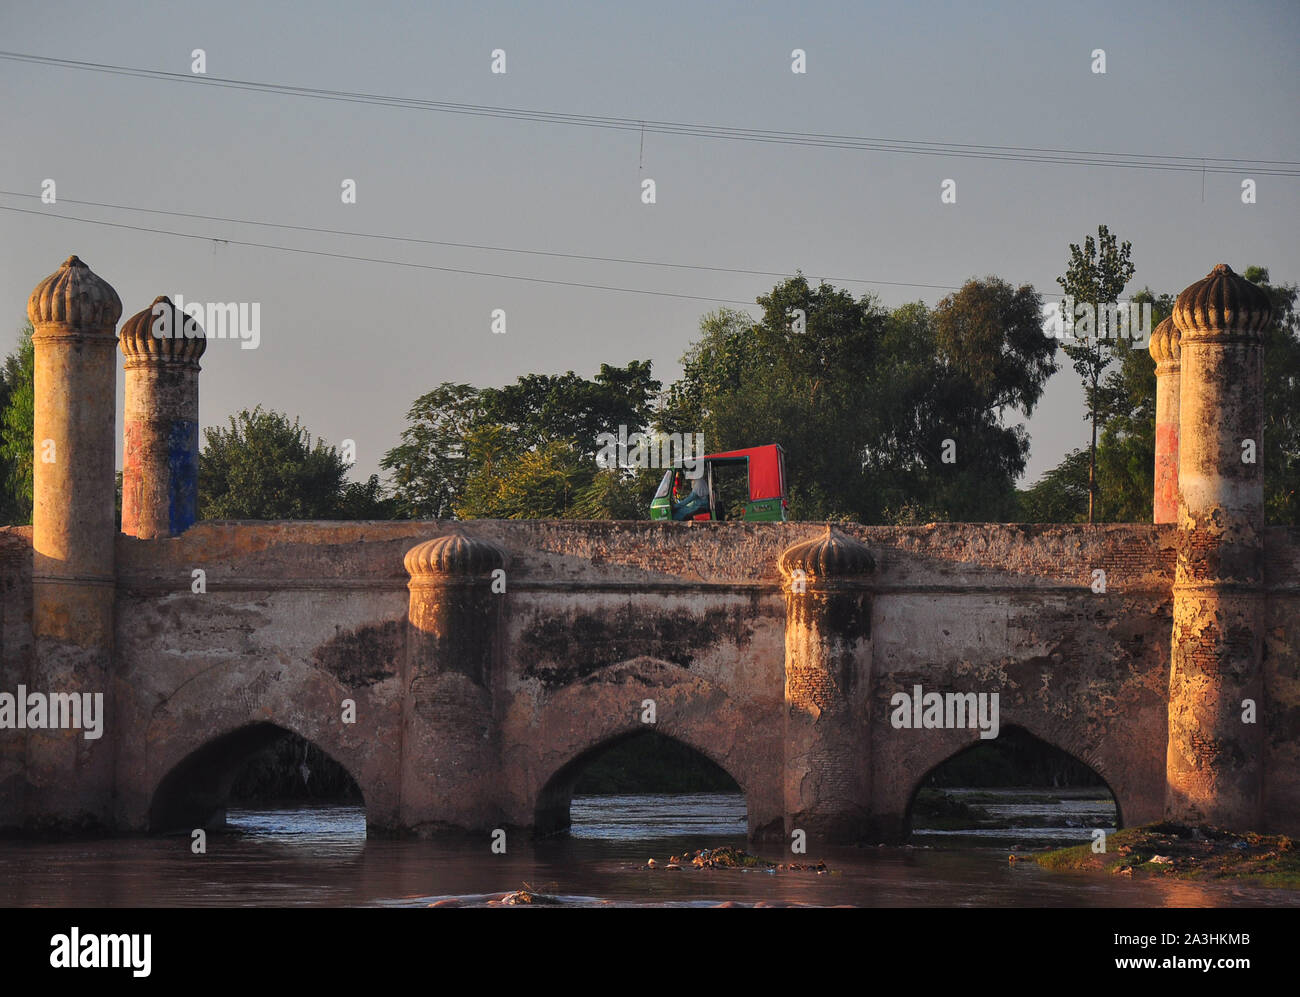 Il Chuha Gujar Bridge si erge sopra bara del fiume e vicino al Chuha Gujar village, secondo un'opinione, Sher Shah Suri che hanno governato l'India dal 1476 al 1545, aveva costruito il ponte mentre un altro dice che il re Shah Jahan, che regnò dal 1627 al 1658, ha eretto la struttura. Eppure il terzo parere attribuisce la sua costruzione al Haji Karim Bakhsh Sethi, una nota business tycoon vissuto nel periodo Mughal, quindi la gente del posto lo chiamano ponte Sethian ma residenti comunemente conosciuto dai suoi due nomi, Bara o Speen (bianco) ponte. Circa 290 piedi di lunghezza e 33 metri di larghezza fondata oltre 26 grandi e piccoli pilastri; t Foto Stock